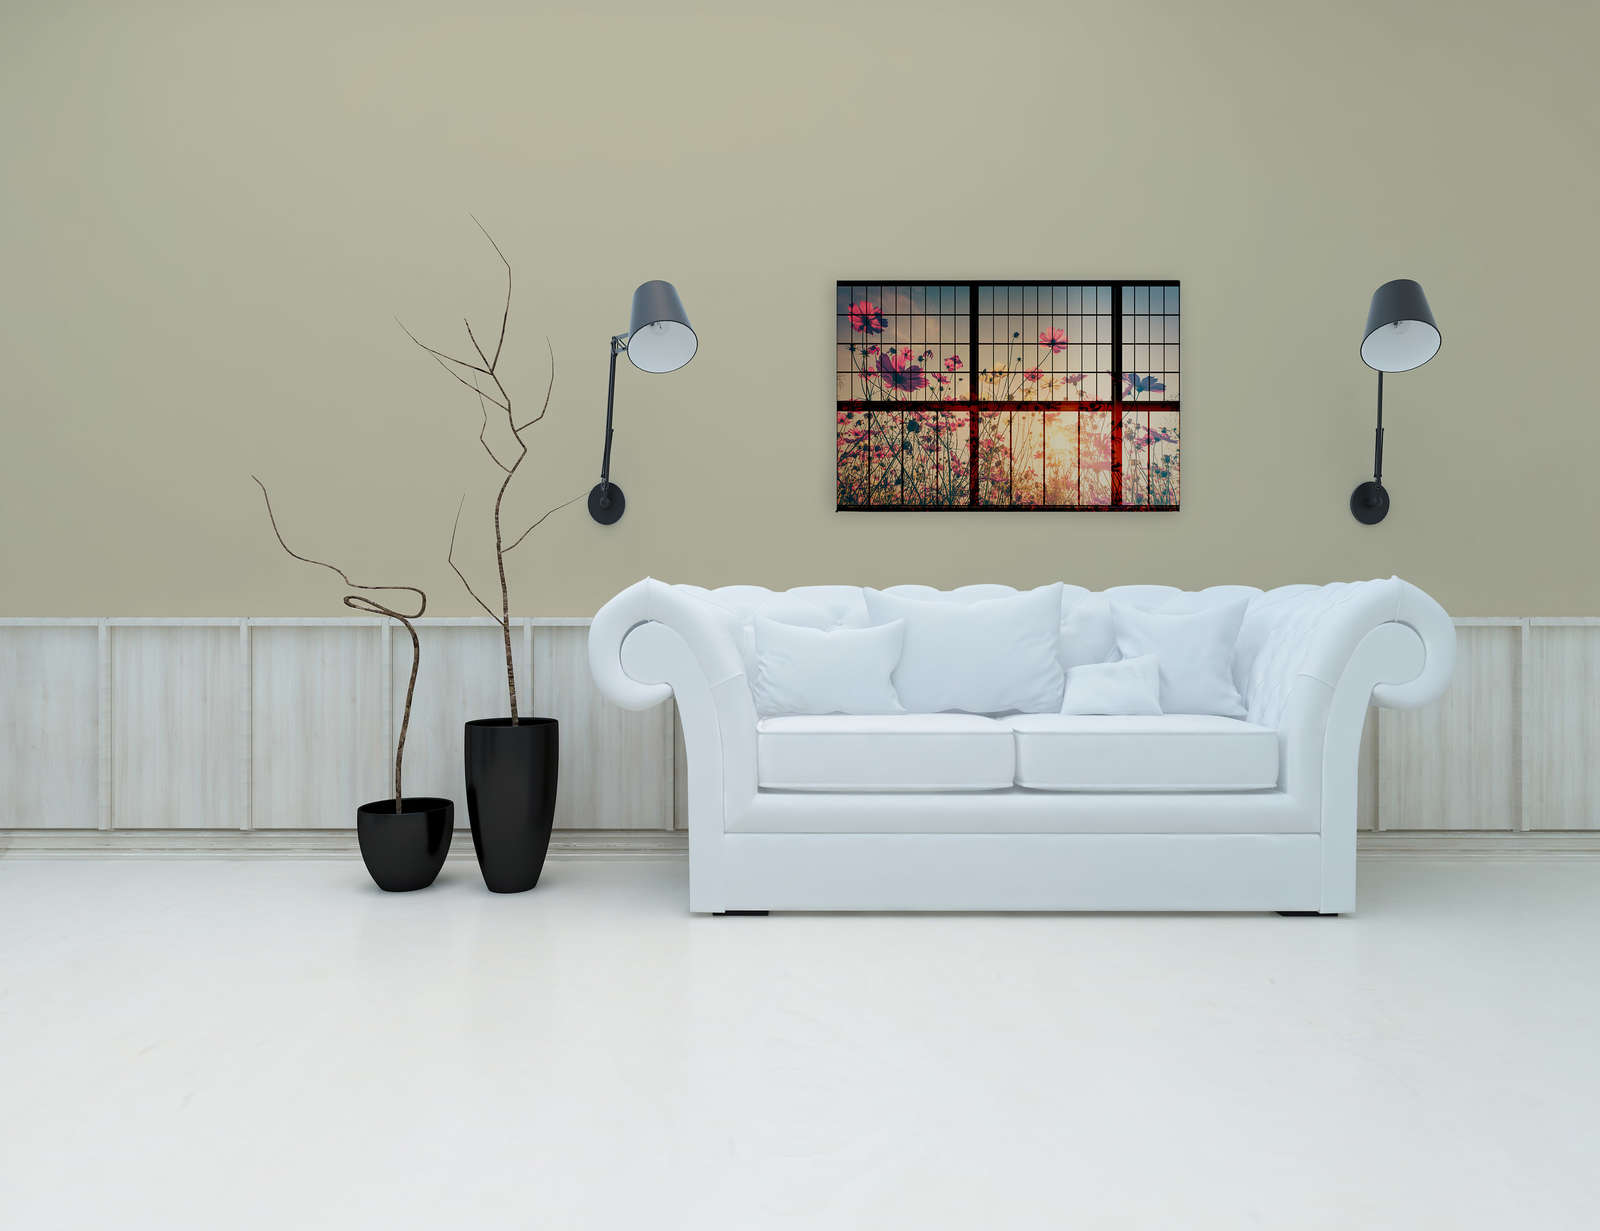             Weide 1 - Muntin Raam Canvas Schilderij met Bloemrijkweide - 0.90 m x 0.60 m
        